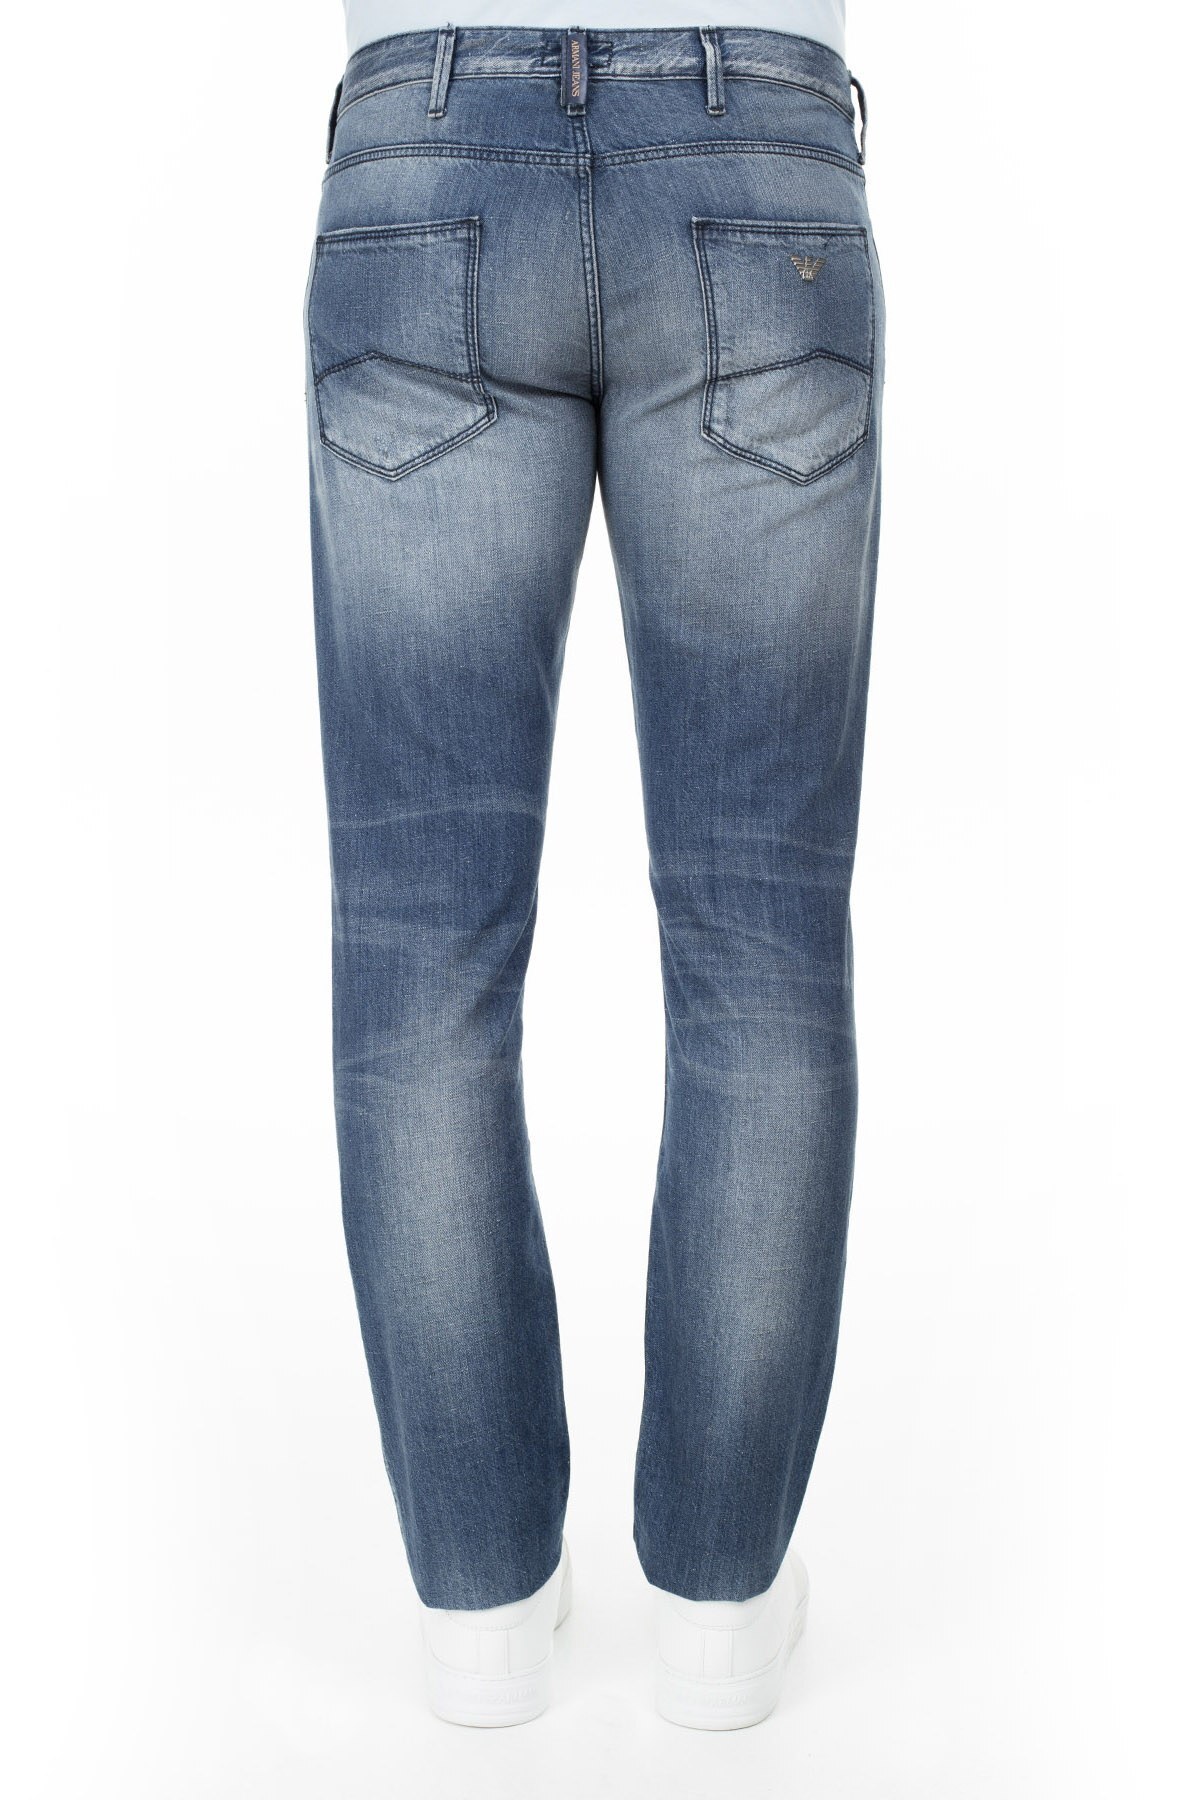 Armani J06 Jeans Erkek Kot Pantolon 3Y6J06 6D1YZ 1500 LACİVERT